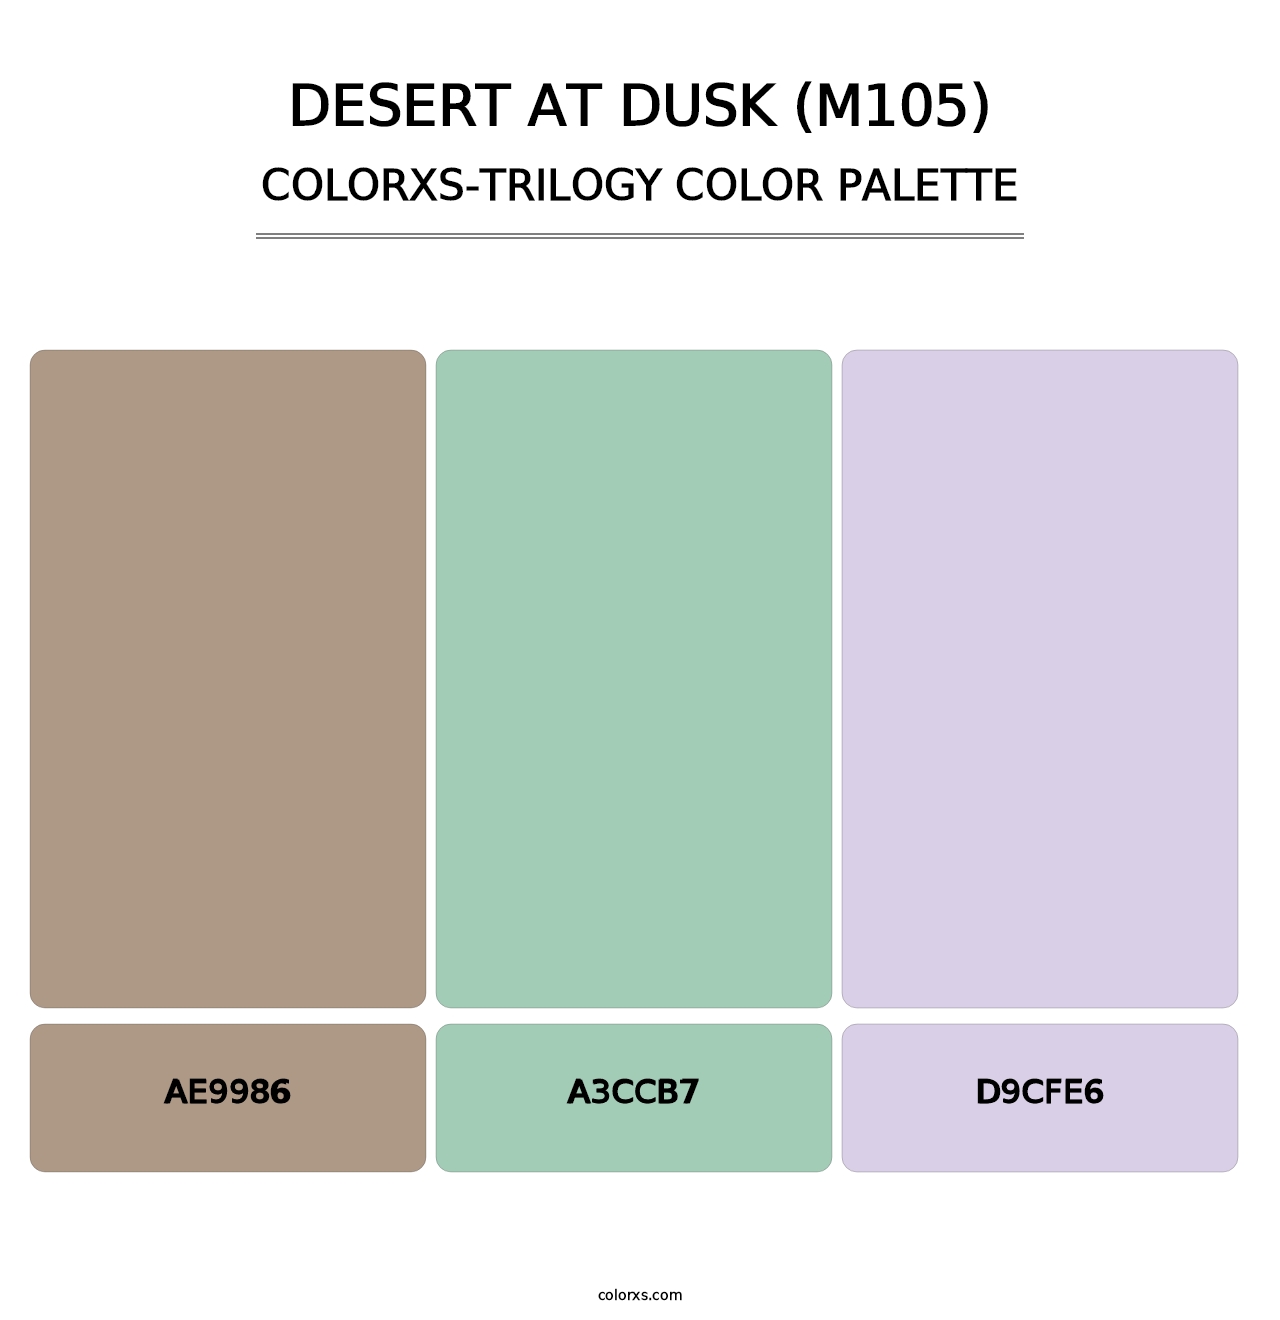 Desert at Dusk (M105) - Colorxs Trilogy Palette